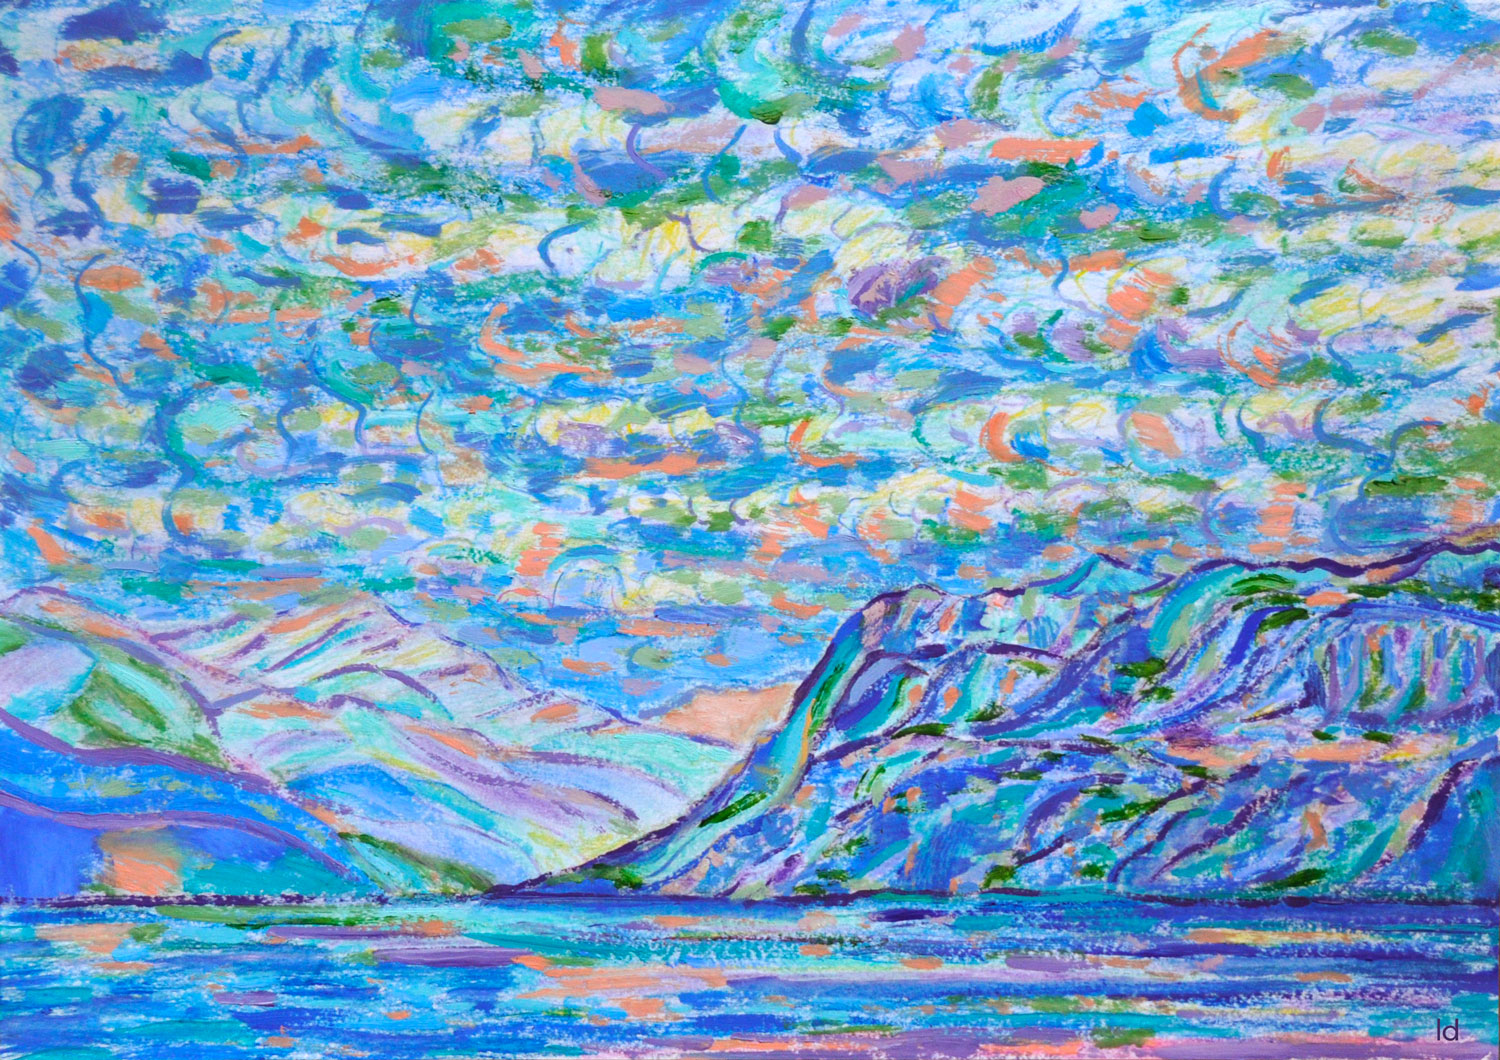 Lac Léman, St Prex, 19. Crayon et huile sur papier, 30x42, 2020